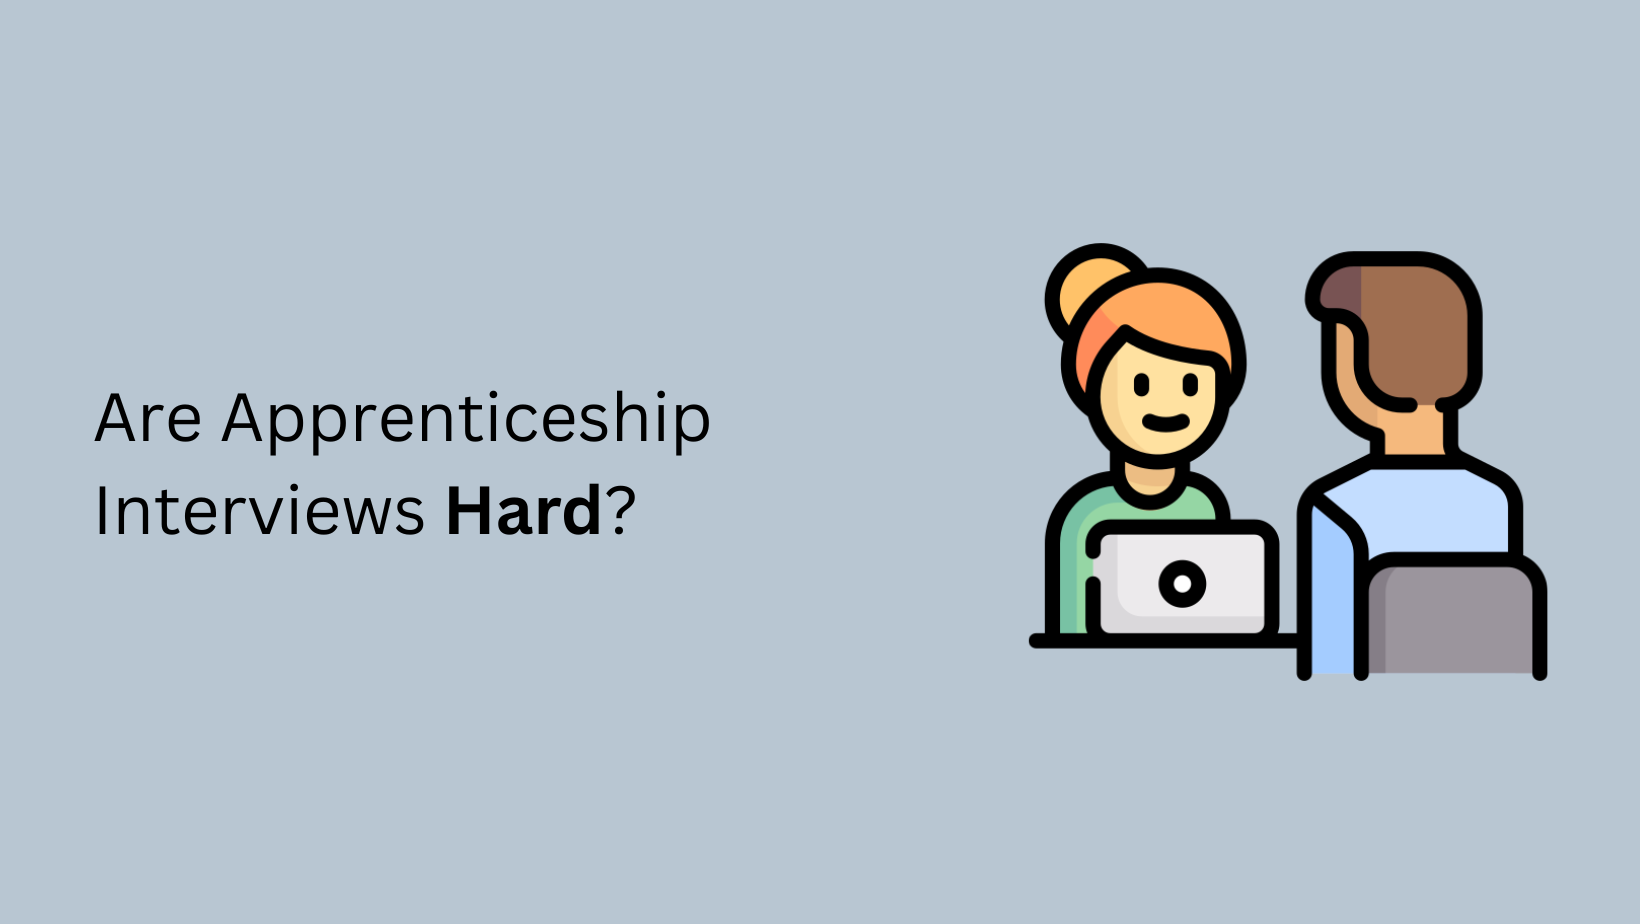 Are Apprenticeship Interviews Hard